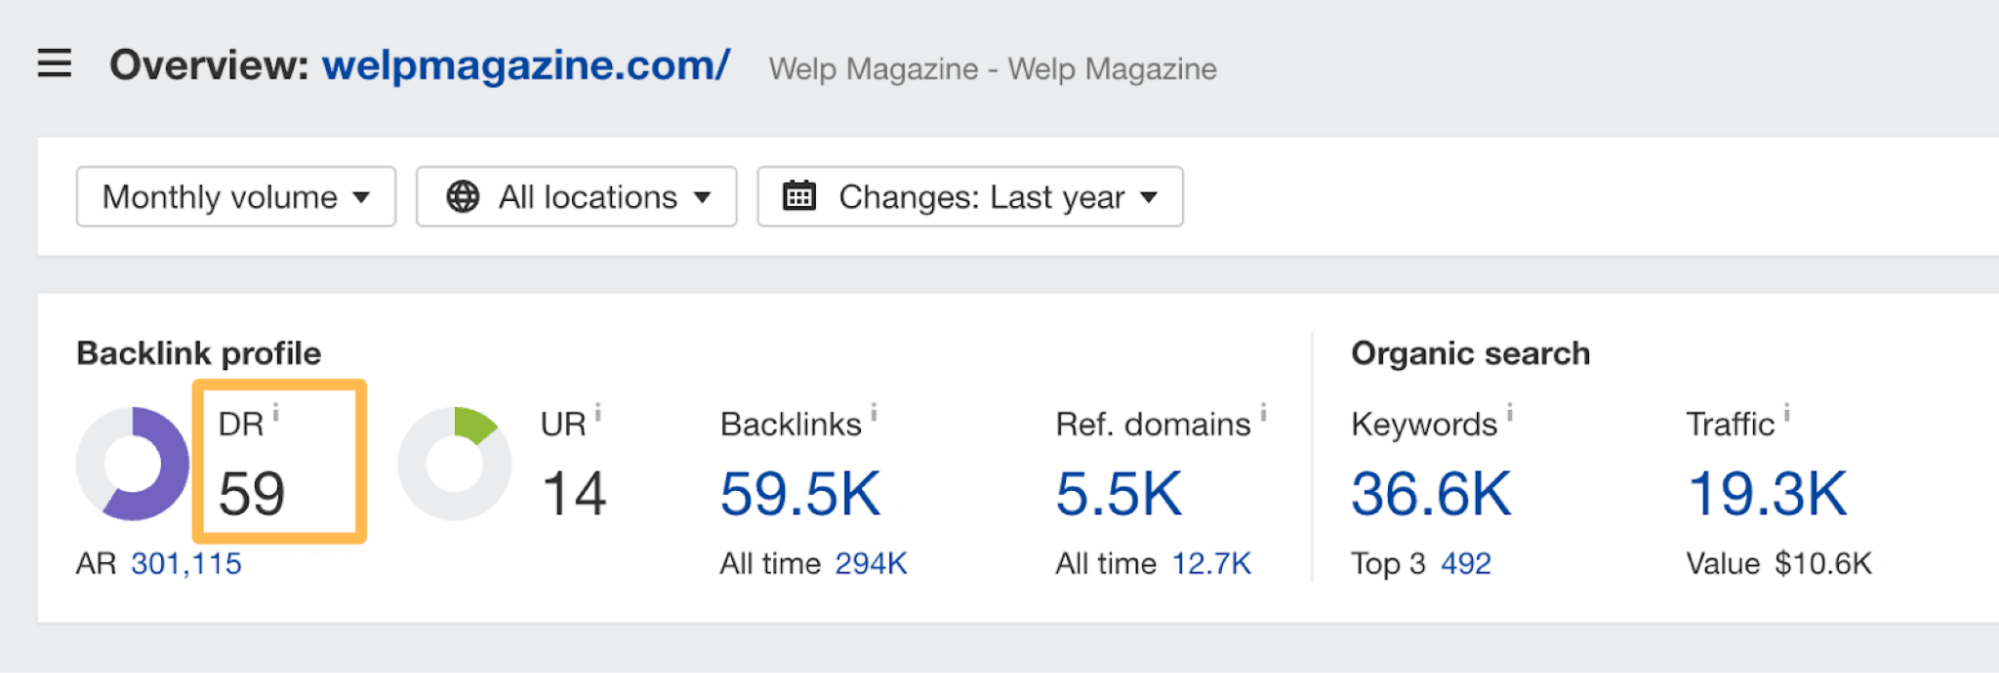 通过 Ahrefs' Site Explorer 看到 Welp Magazine 的 Domain Rating (DR)
